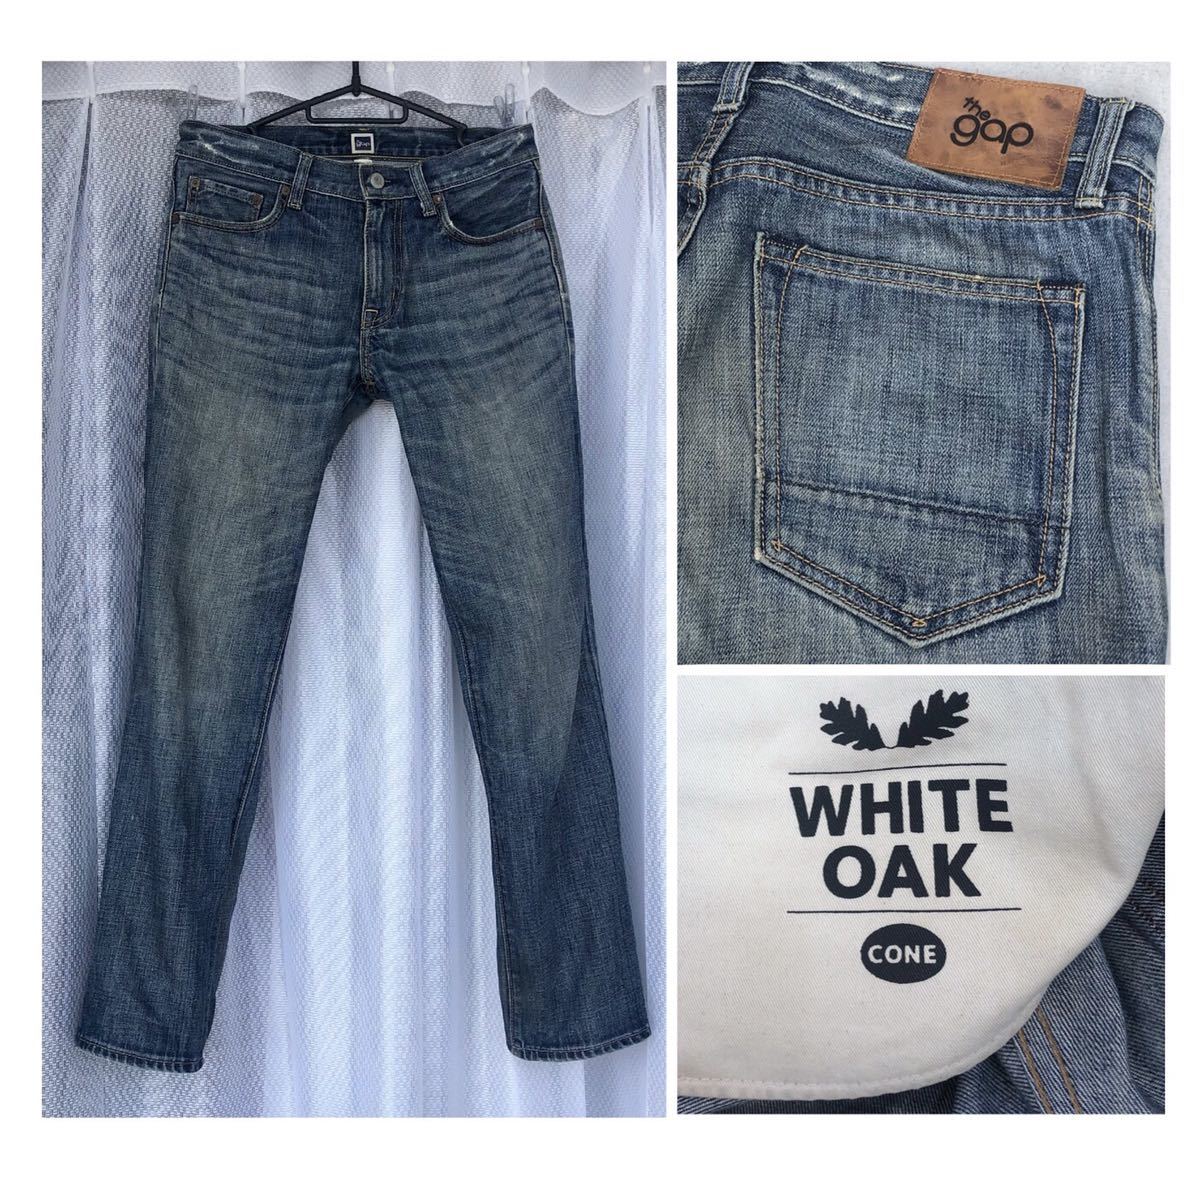  blue GAP white oak / corn Denim *REGULAR FIT STRAIGHT/W30* red ear American made cloth cell bijiWHITE OAK/CONE DENIM Gap jeans 